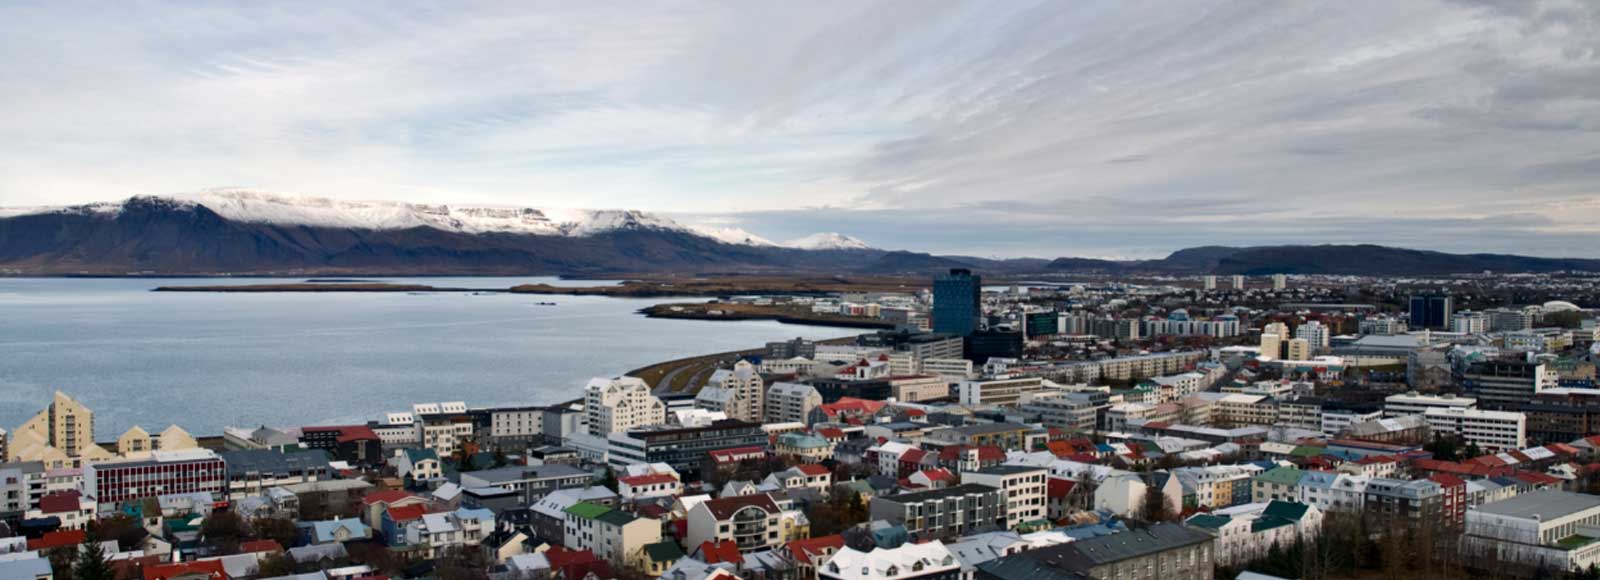 Transfer Offers in Reykjavik. Low Cost Transfers in  Reykjavik 